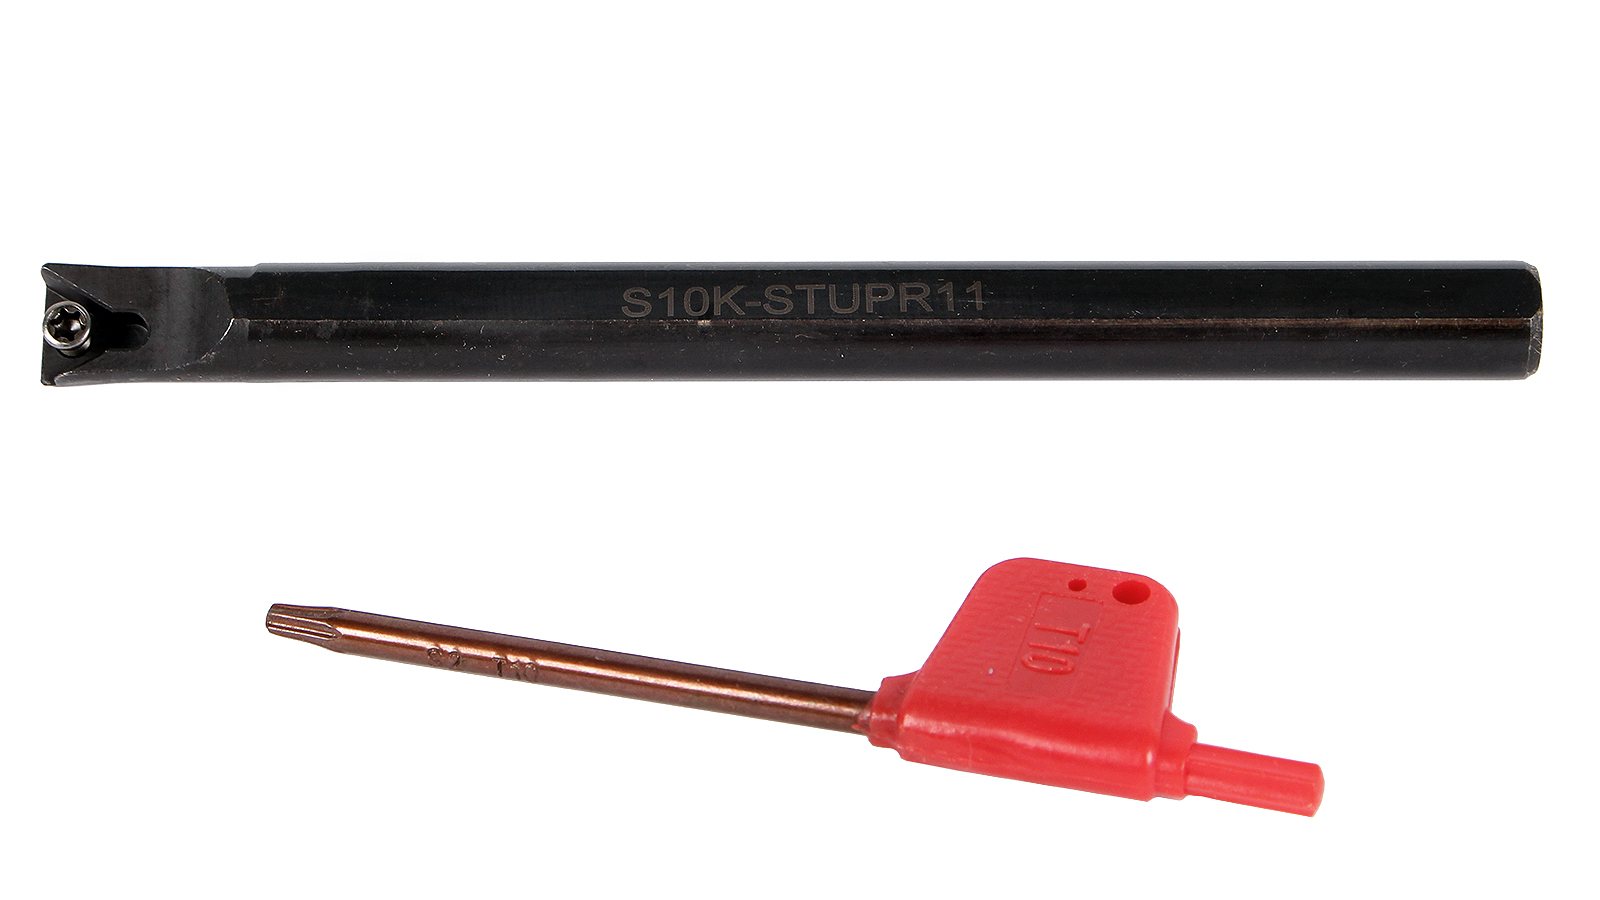 Резец токарный расточной для сквозных и глухих отверстий S10K-STUPR11 токарный расточной резец для глухих отверстий станкоинструмент и оснастка